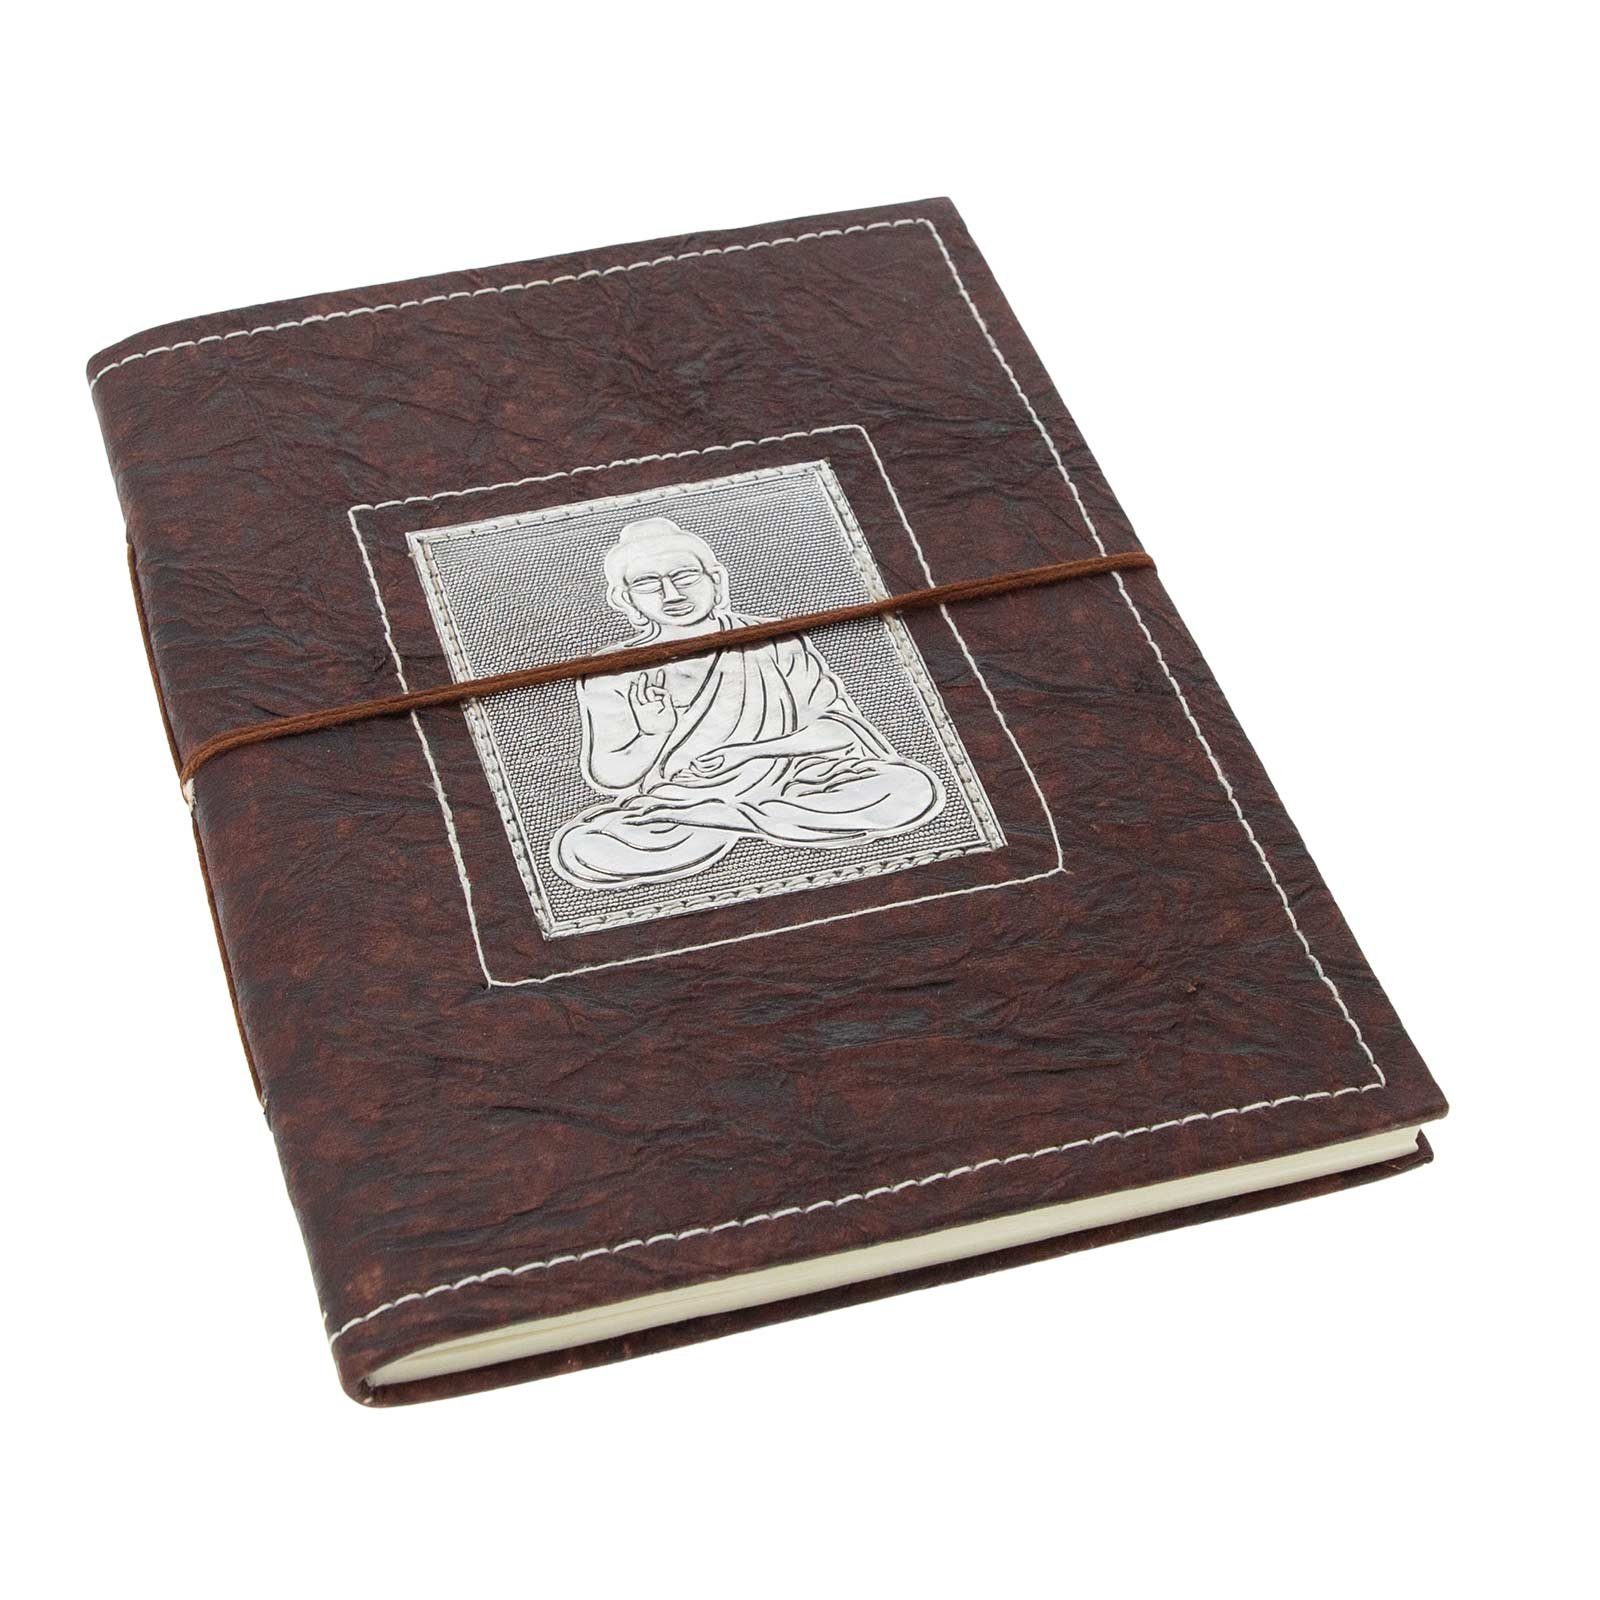 KUNST UND MAGIE Tagebuch Tagebuch Buddha handgefertigt Notizbuch 25x18cm XL Poesiealbum